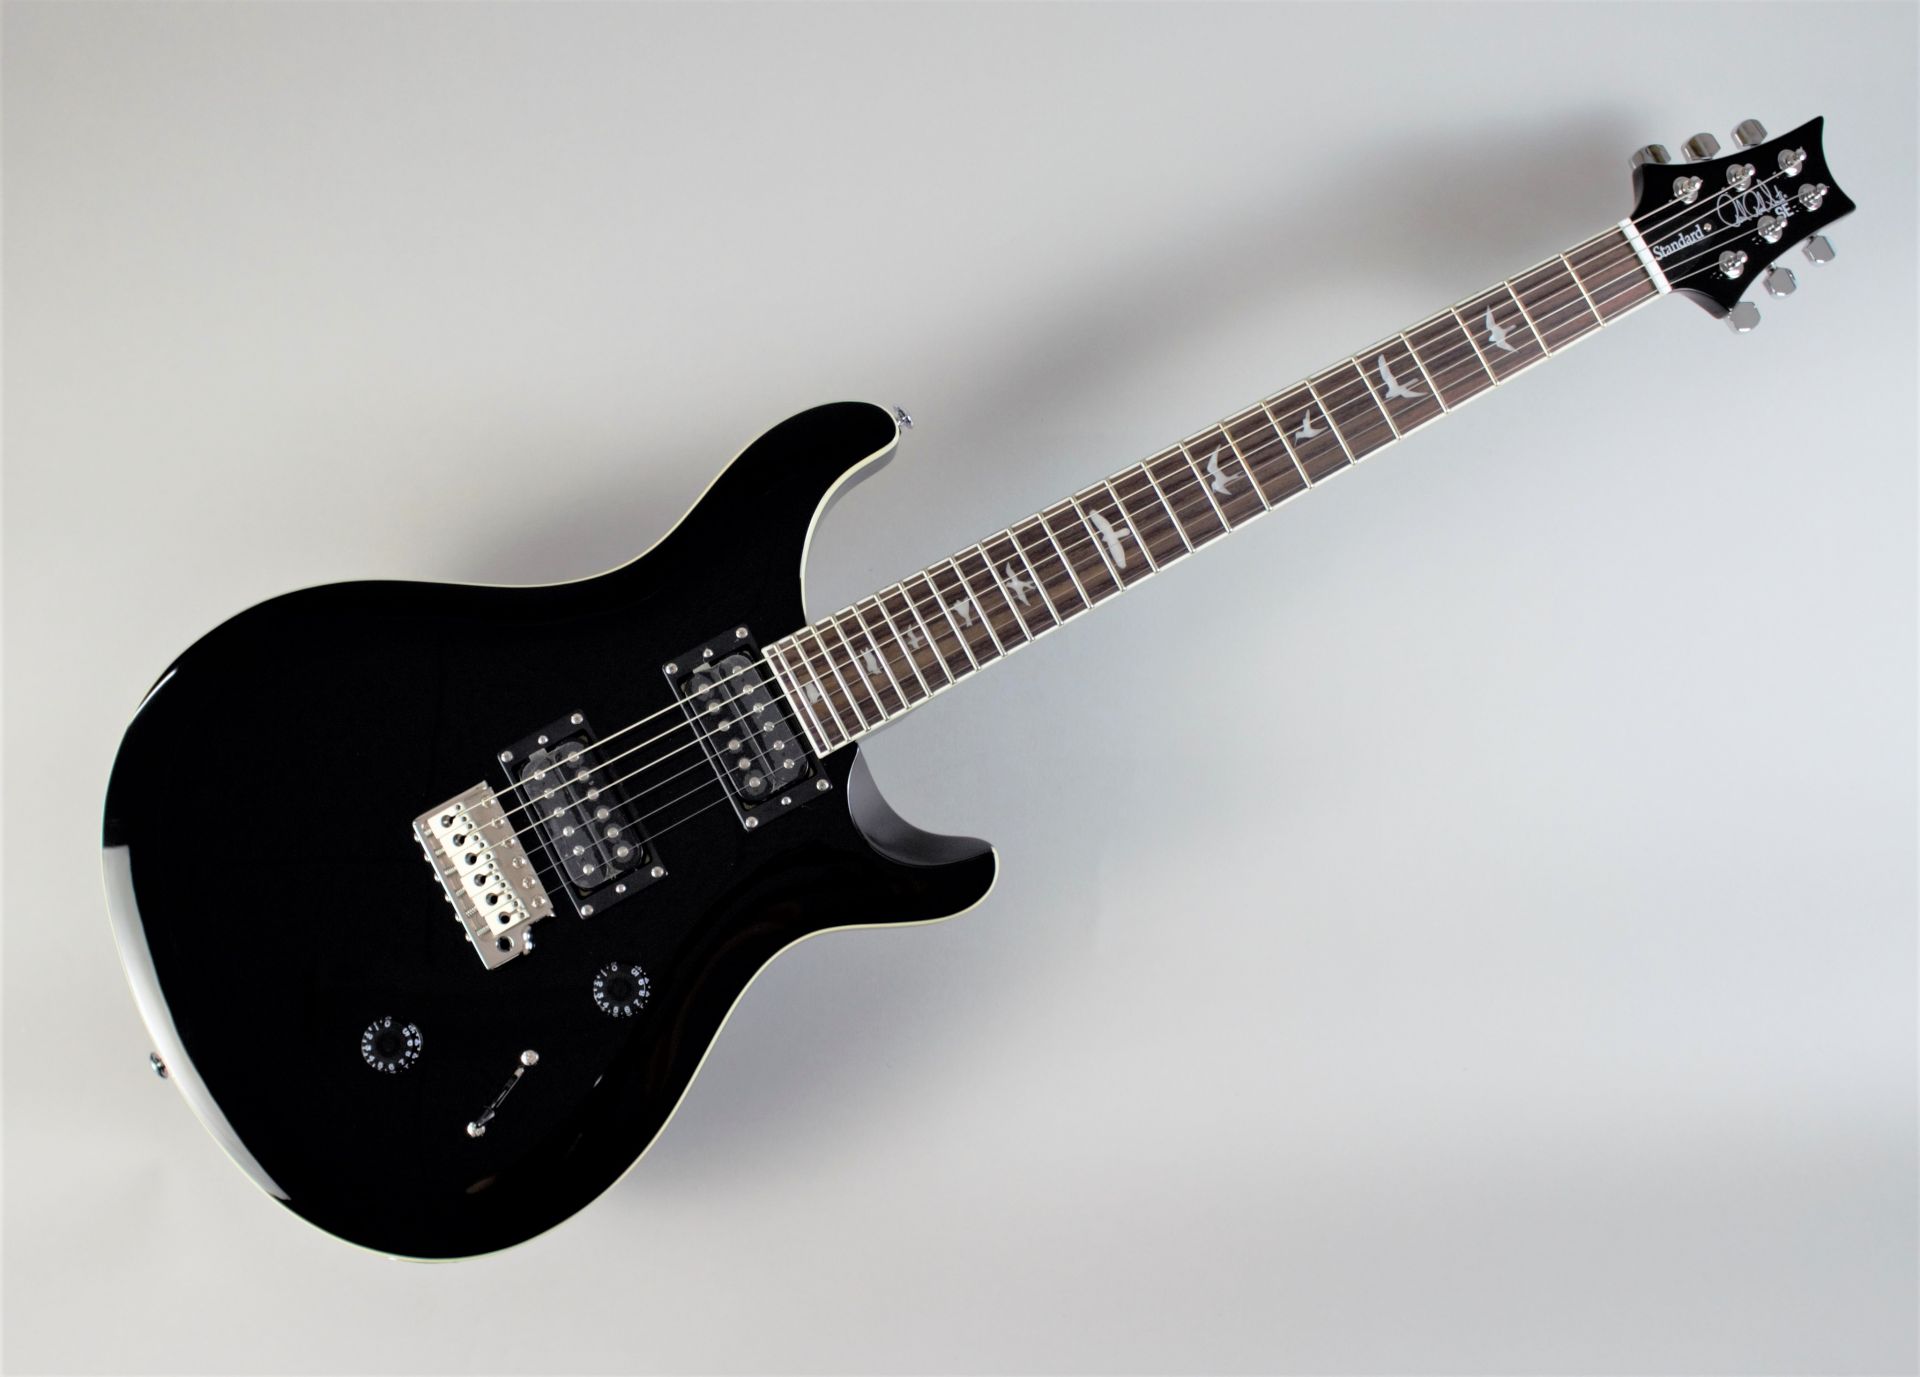 *近日入荷予定！精悍なBLACKカラーを身にまとったSE Standard 24 「初めてのギター」にも「“これぞ”の1本」にも最適なギター「PRS SE Standard 24」 今回このオリジナルカラーを採用した島村楽器オーダーモデルが発売します。 - PRS STANDARD 24シリーズをベ […]